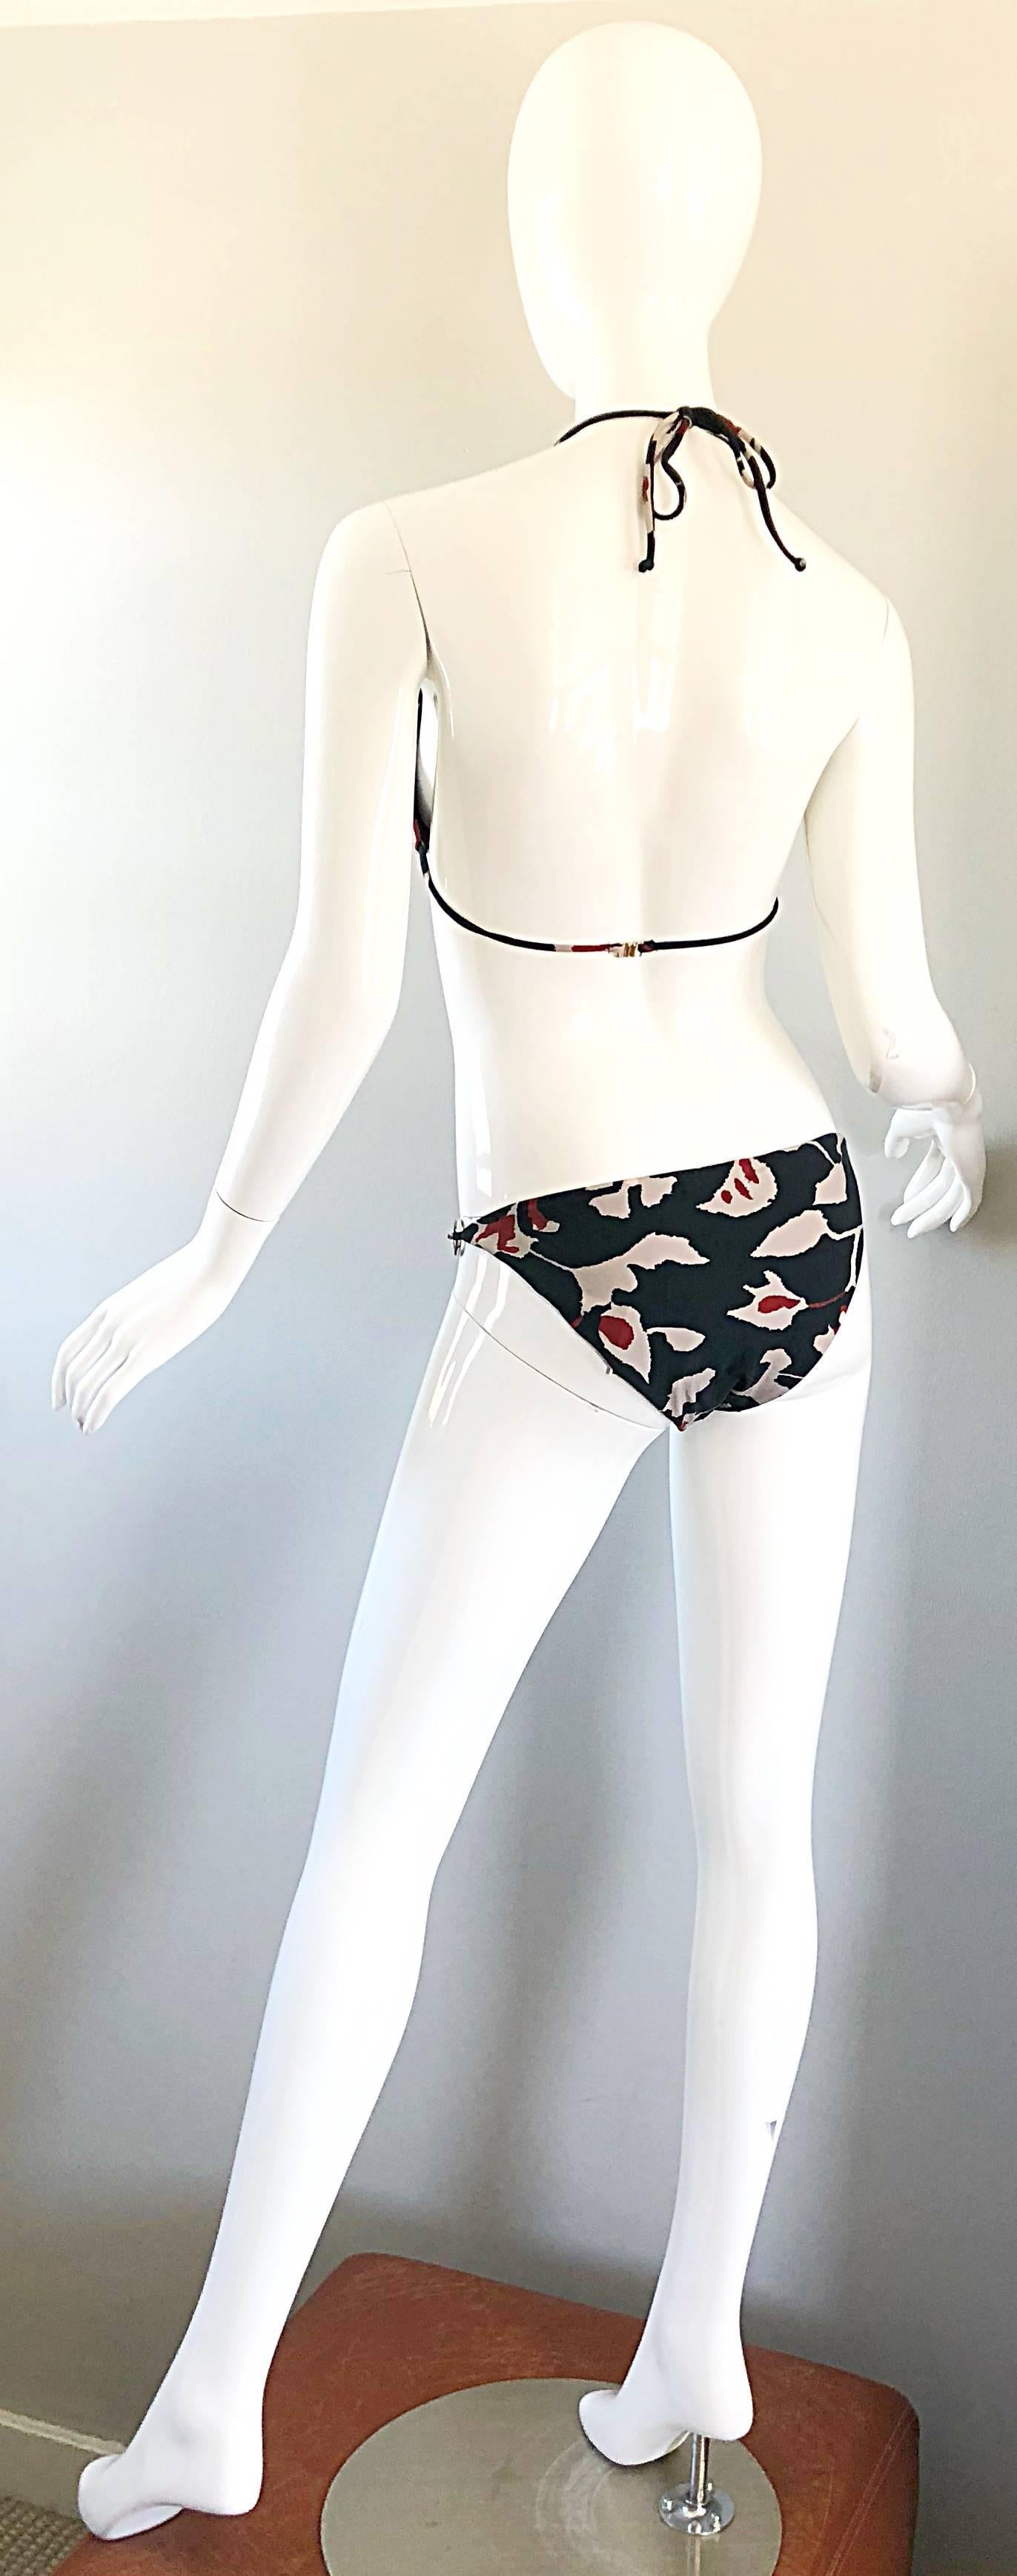 Oscar de la Renta Bikini-Badeanzug mit Batikmuster und Kettengliedern, neu mit Preisschildern, Größe Large 8